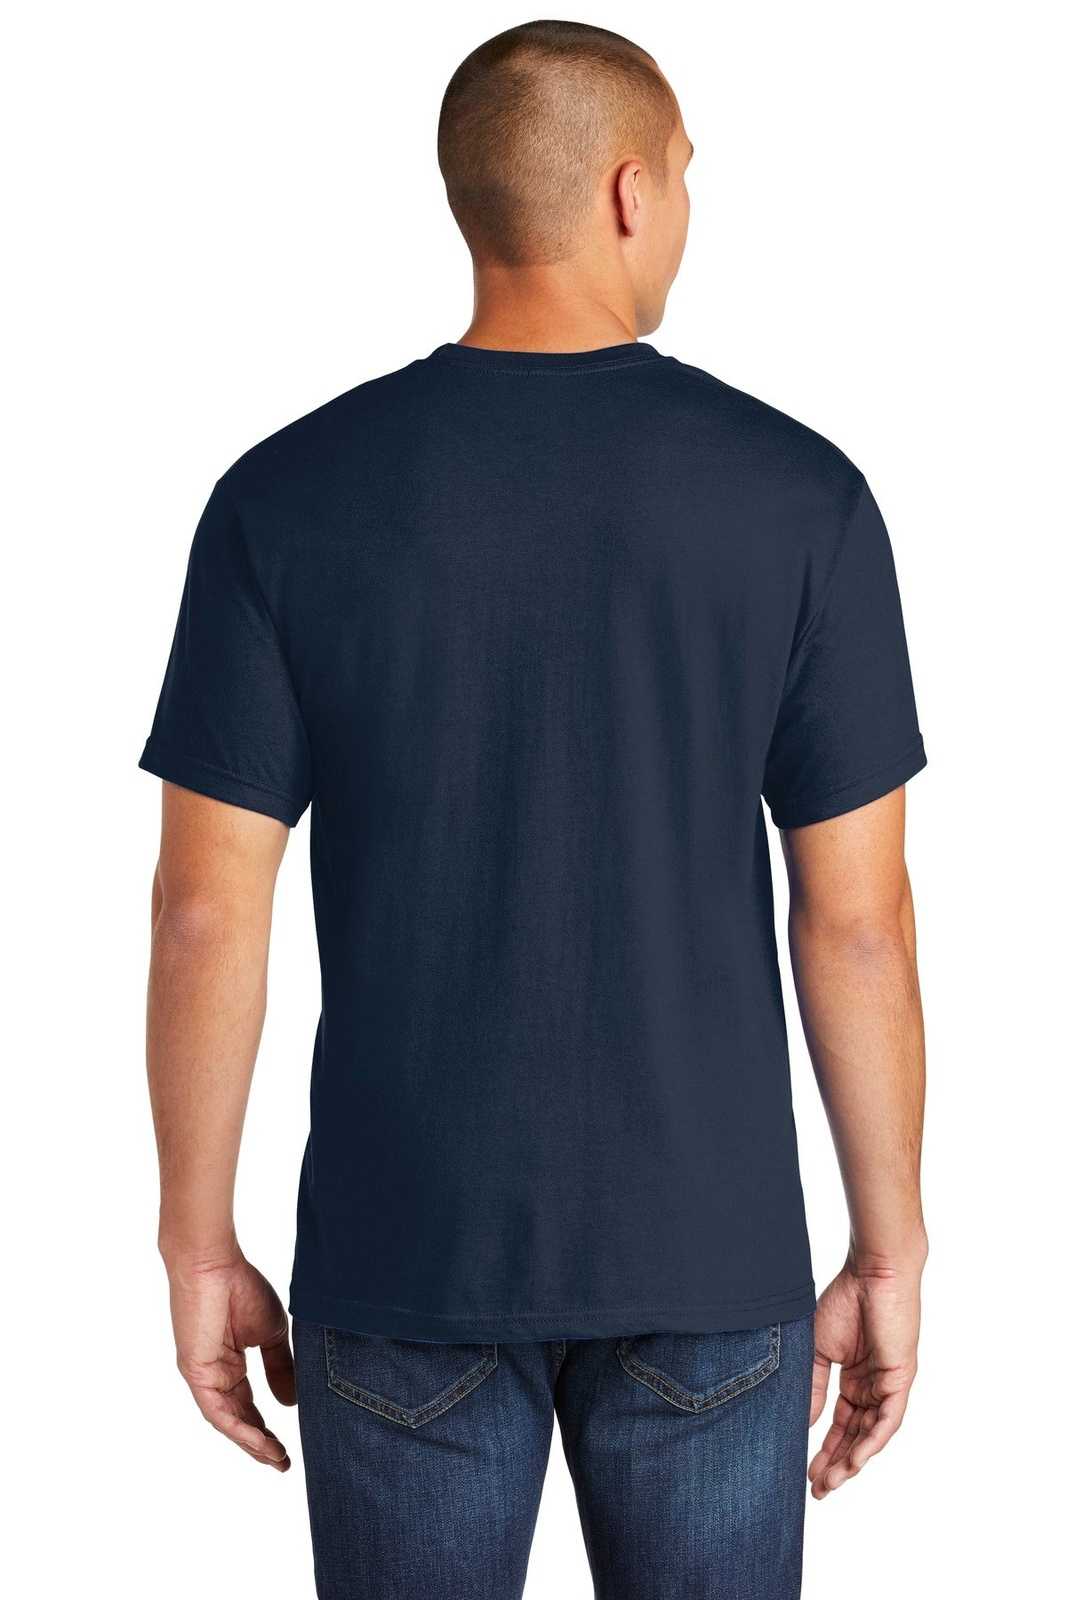 Gildan H000 Hammer T-Shirt - Sport Dark Navy - HIT a Double